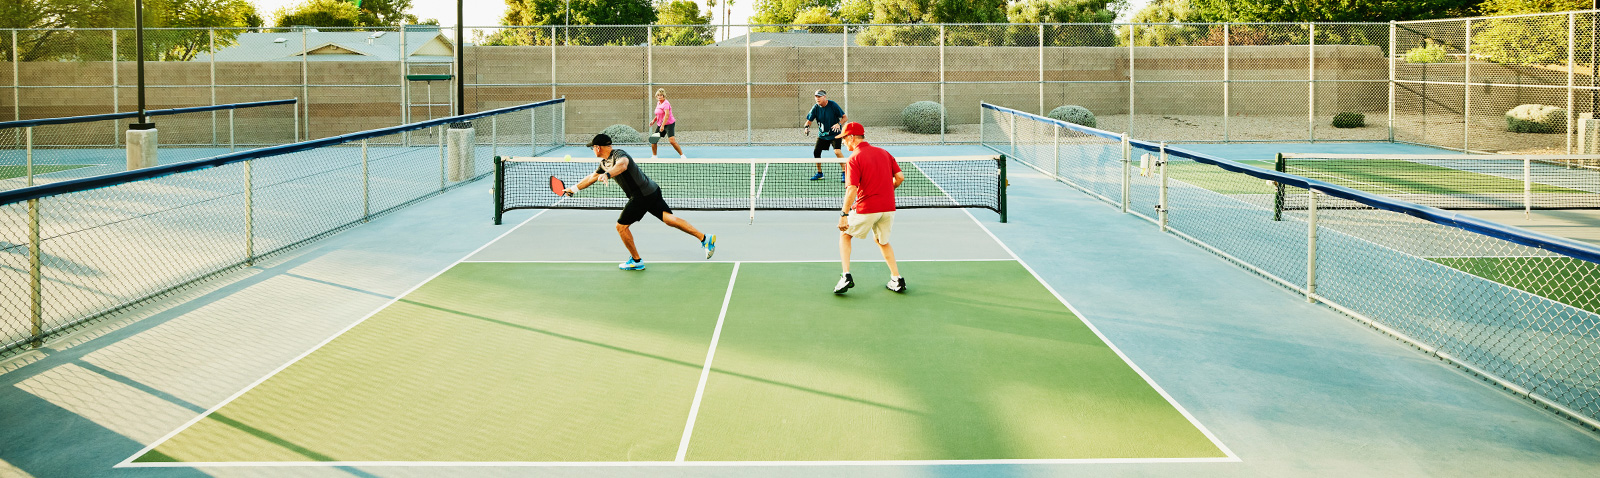 Greencourt - Especialistas en fabricación de pistas de Tenis, Pádel y Fútbol